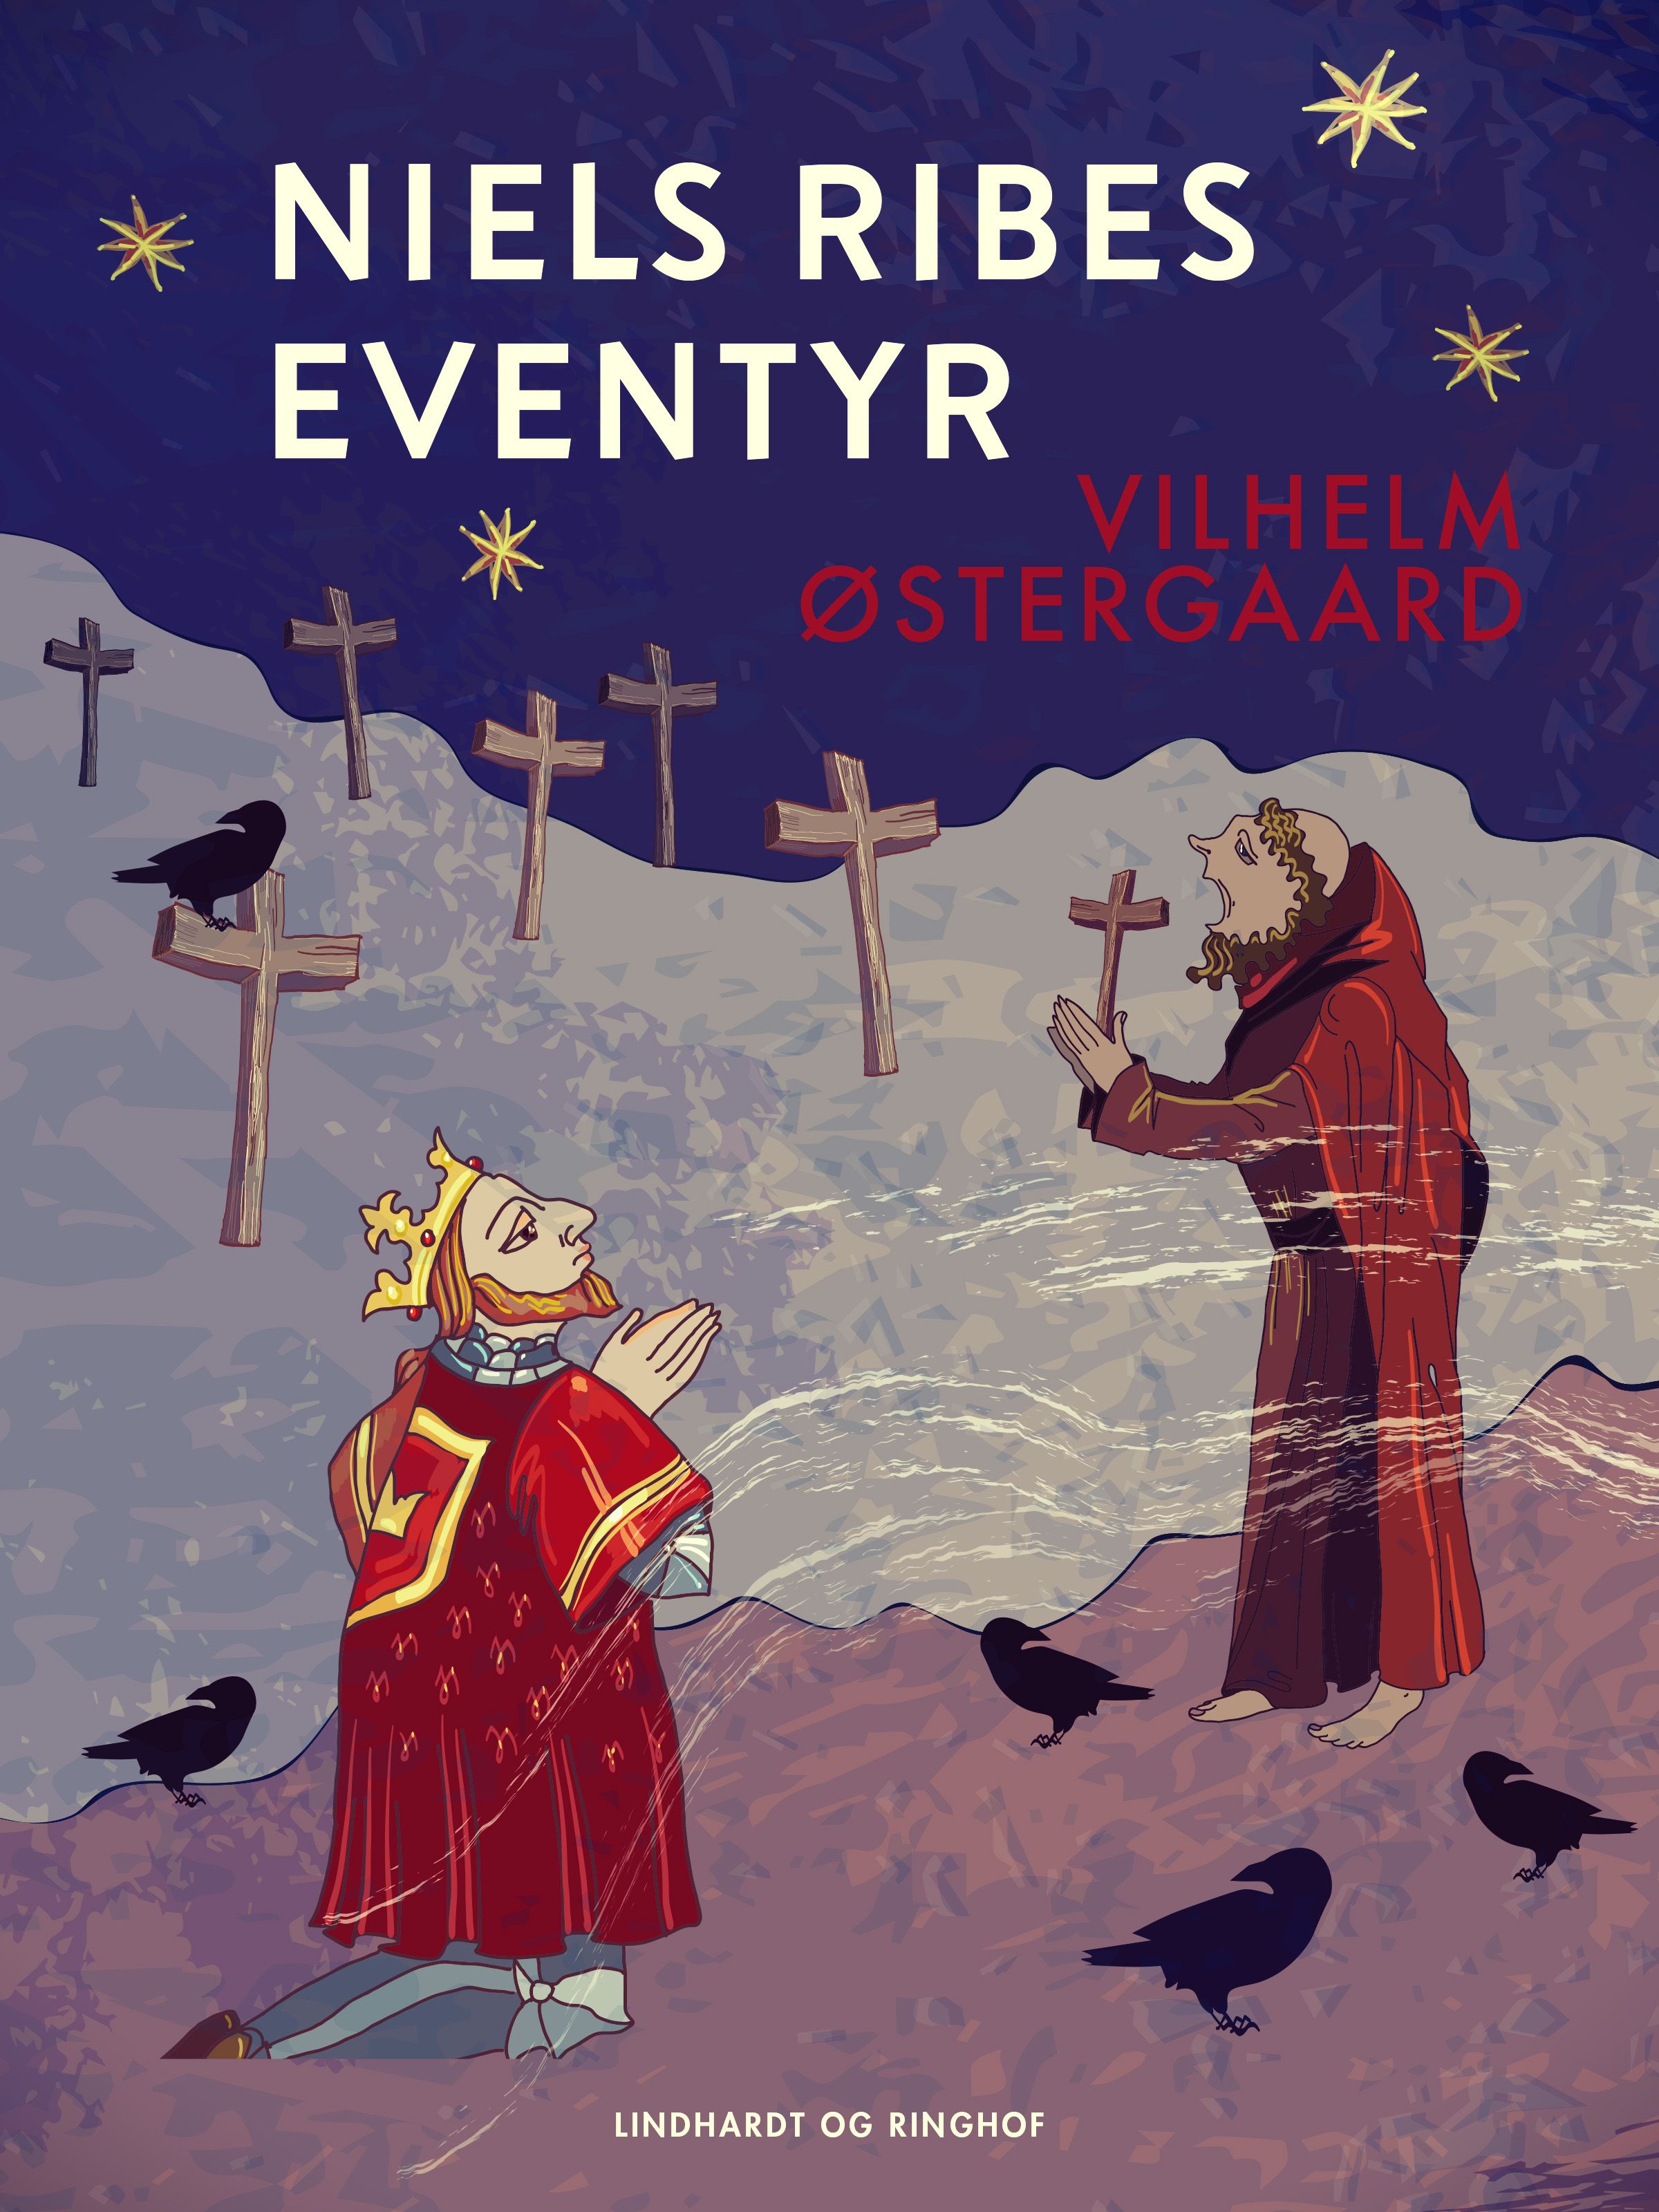 Niels Ribes eventyr, e-bok av Vilhelm Østergaard